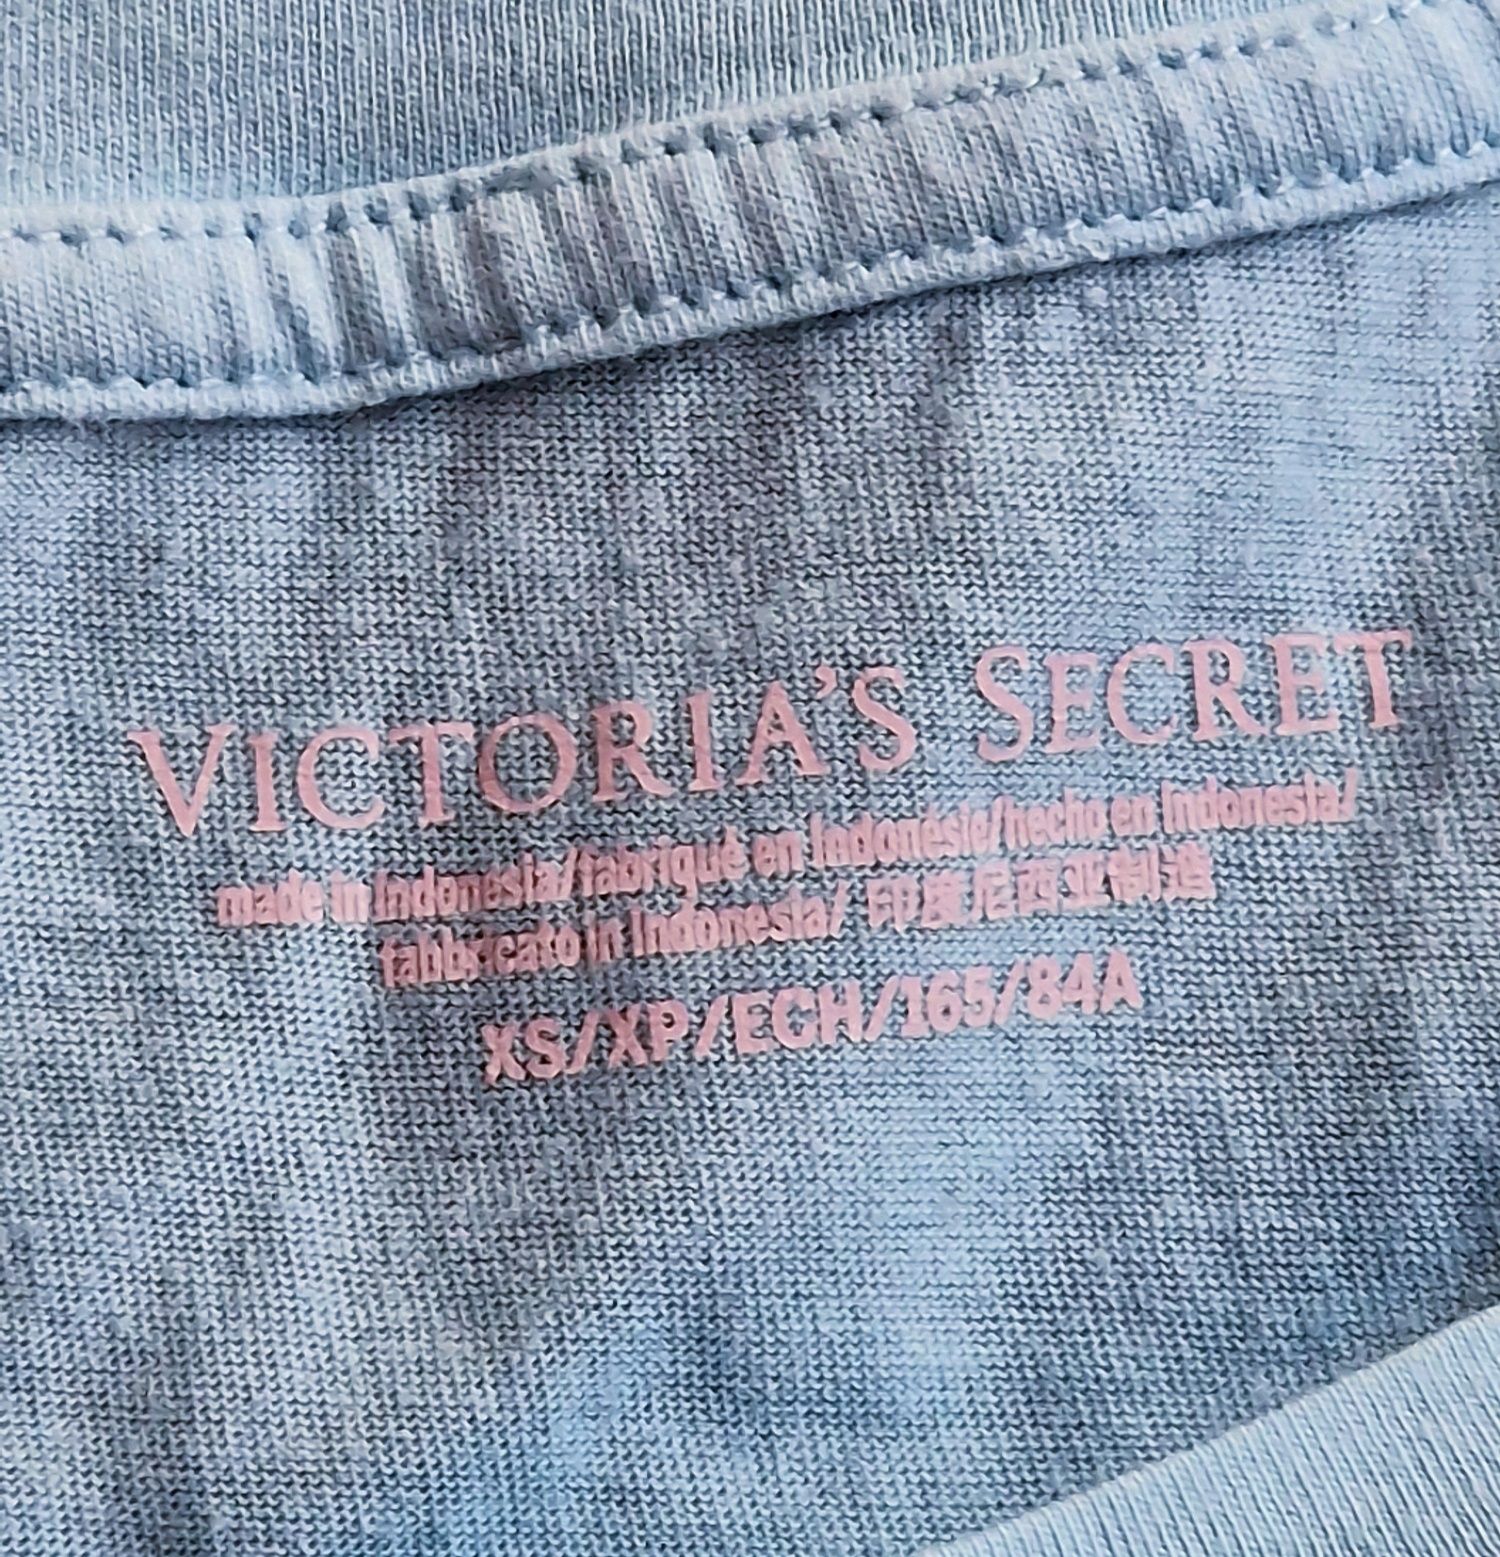 T- Shirt blue " Victoria' s secret".